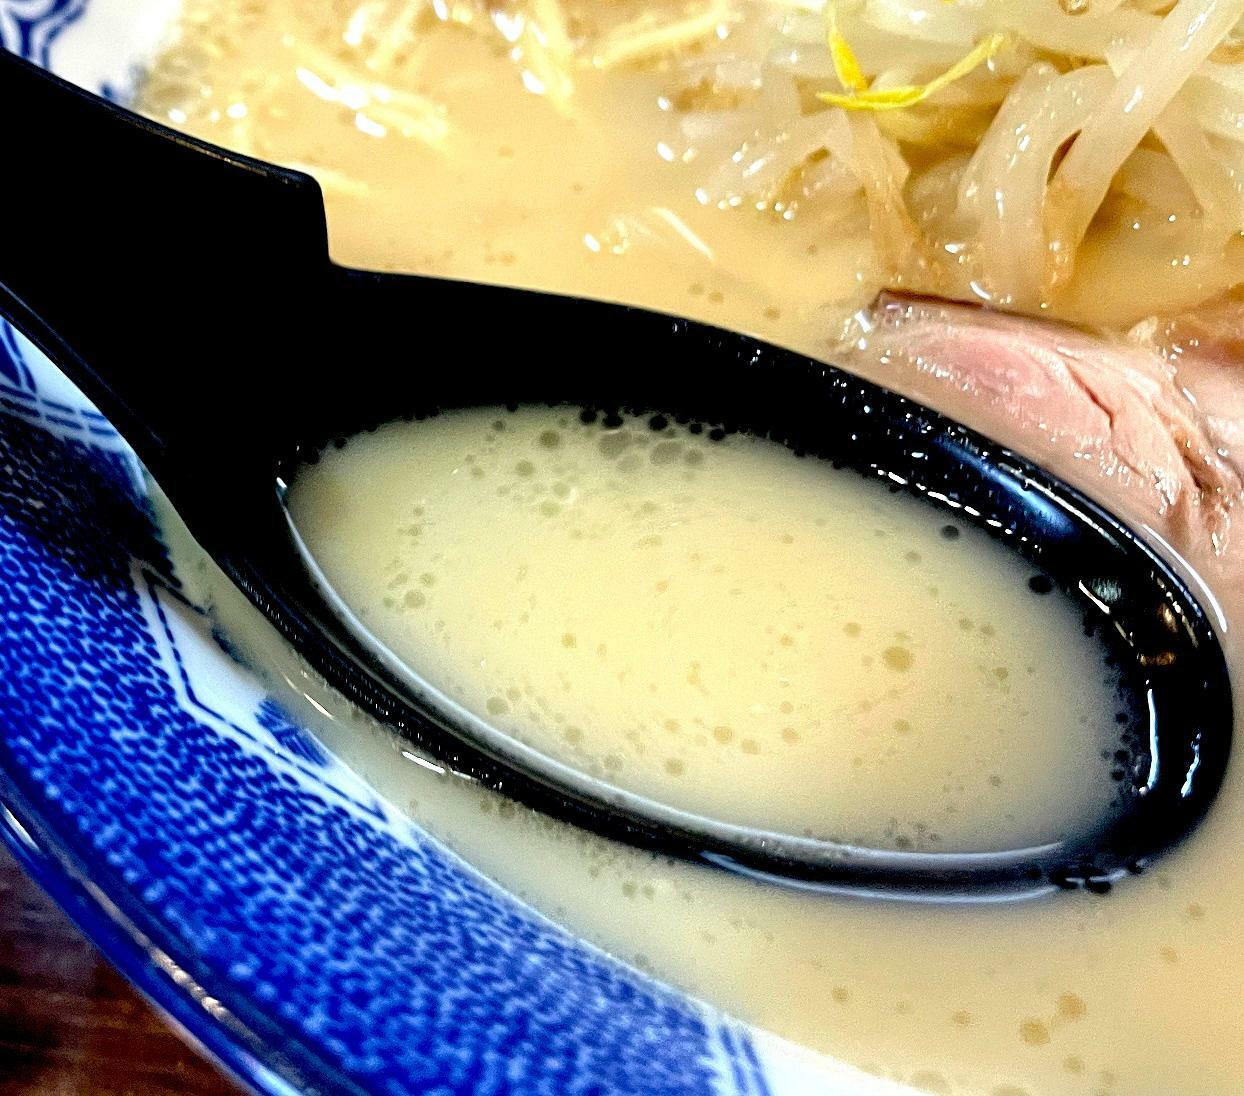 塩味と豚骨の旨味のバランスが良くてどんどん飲めるスープ。うまいよ！